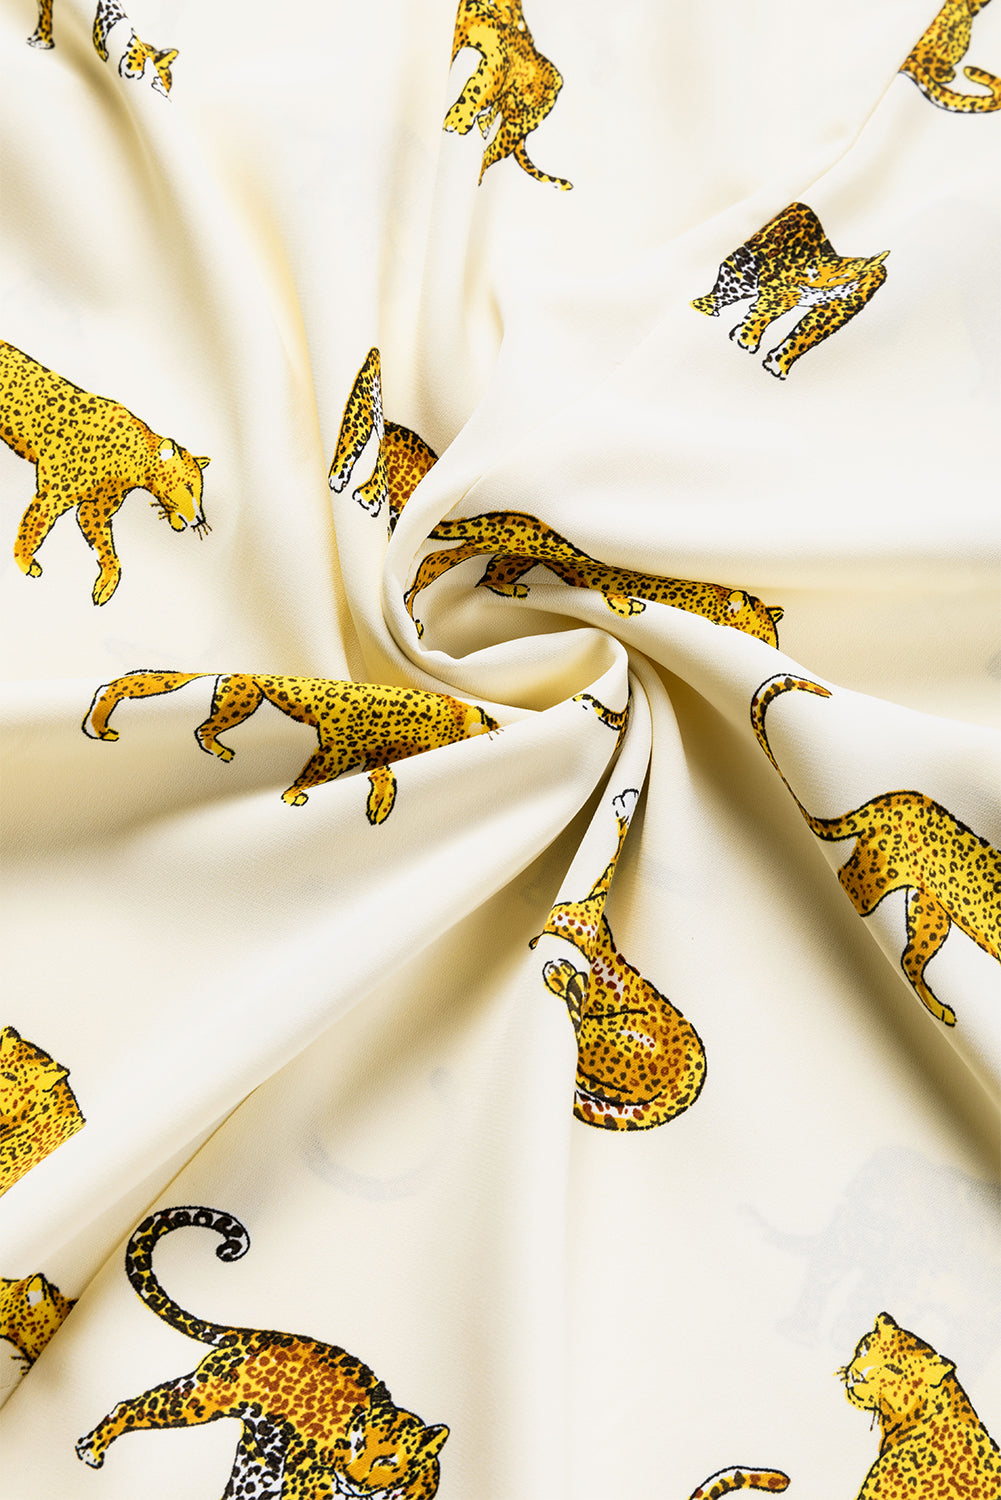 Aprikosenbedruckte Bluse mit Leopardenmuster, Tab-Ärmel, lockere Passform und V-Ausschnitt